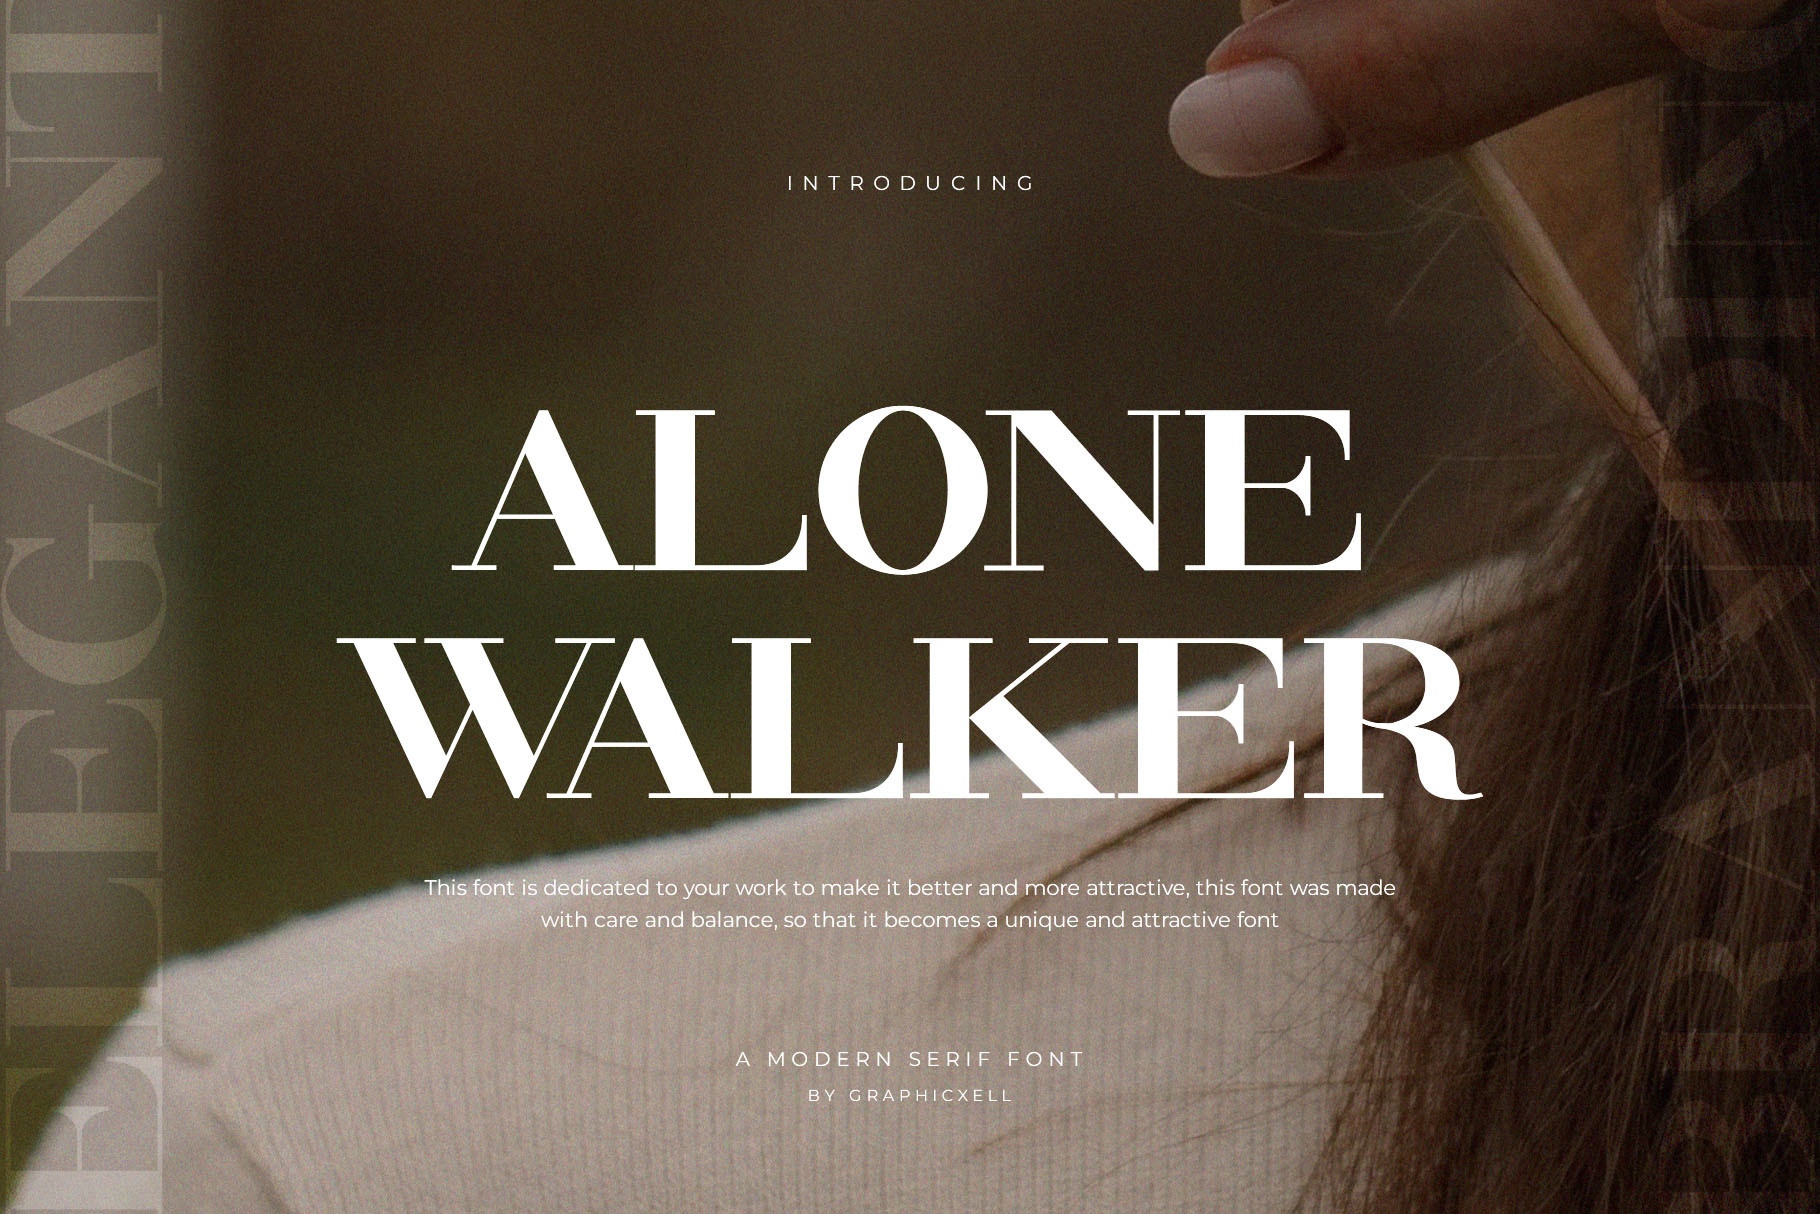 Ejemplo de fuente Alone Walker